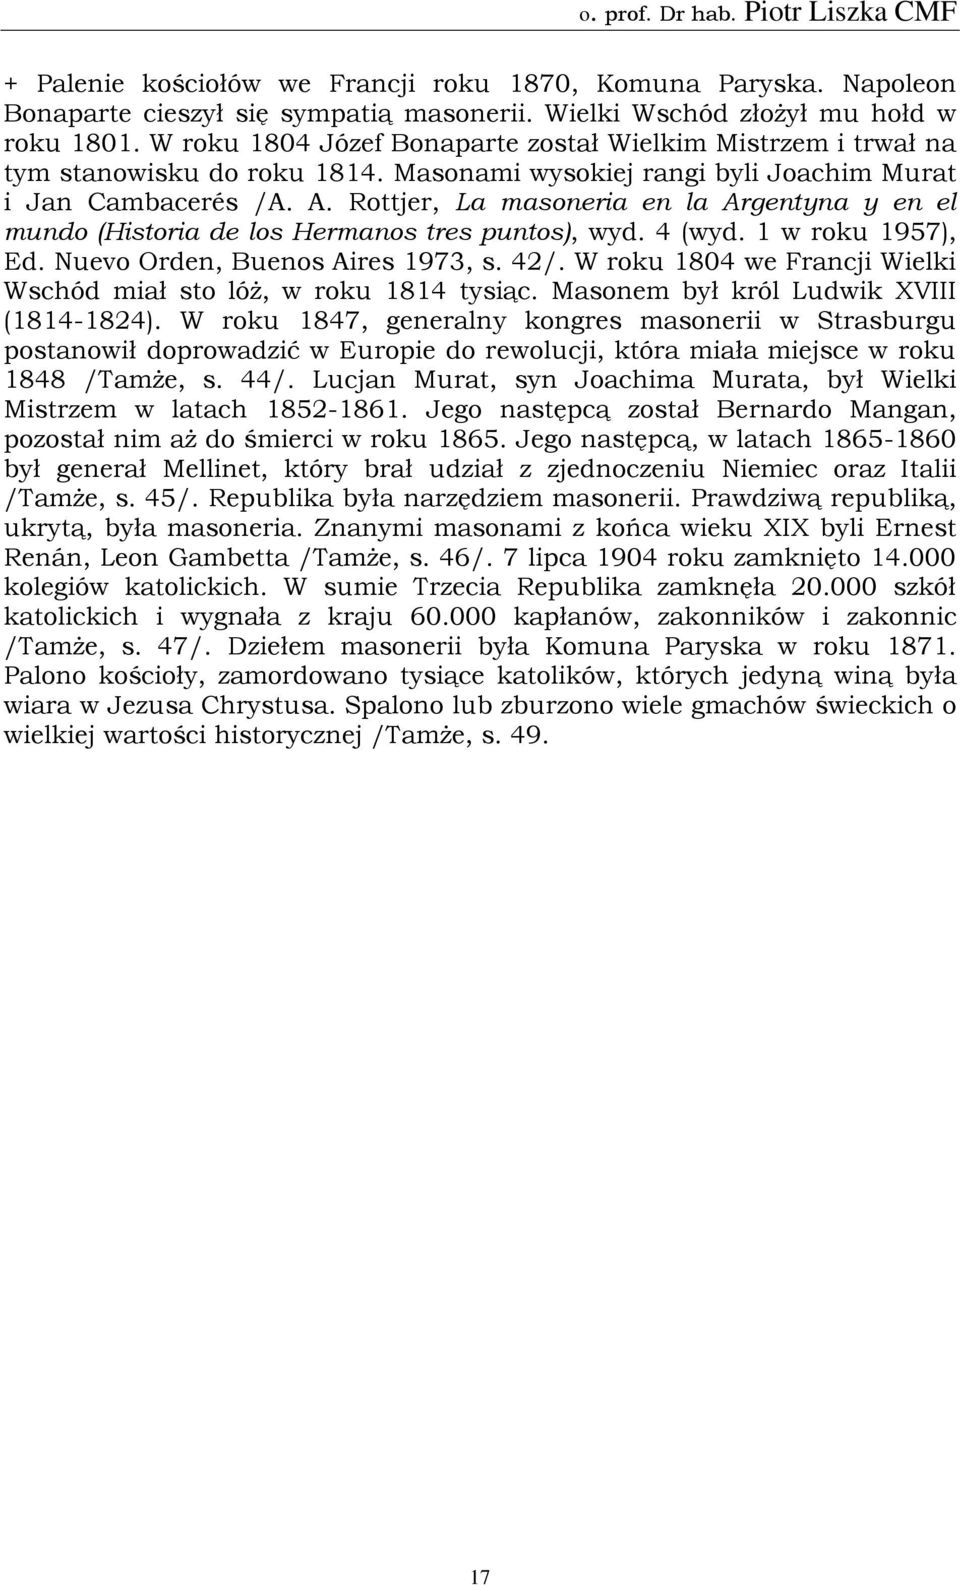 Rottjer, La masoneria en la Argentyna y en el mundo (Historia de los Hermanos tres puntos), wyd. 4 (wyd. 1 w roku 1957), Ed. Nuevo Orden, Buenos Aires 1973, s. 42/.